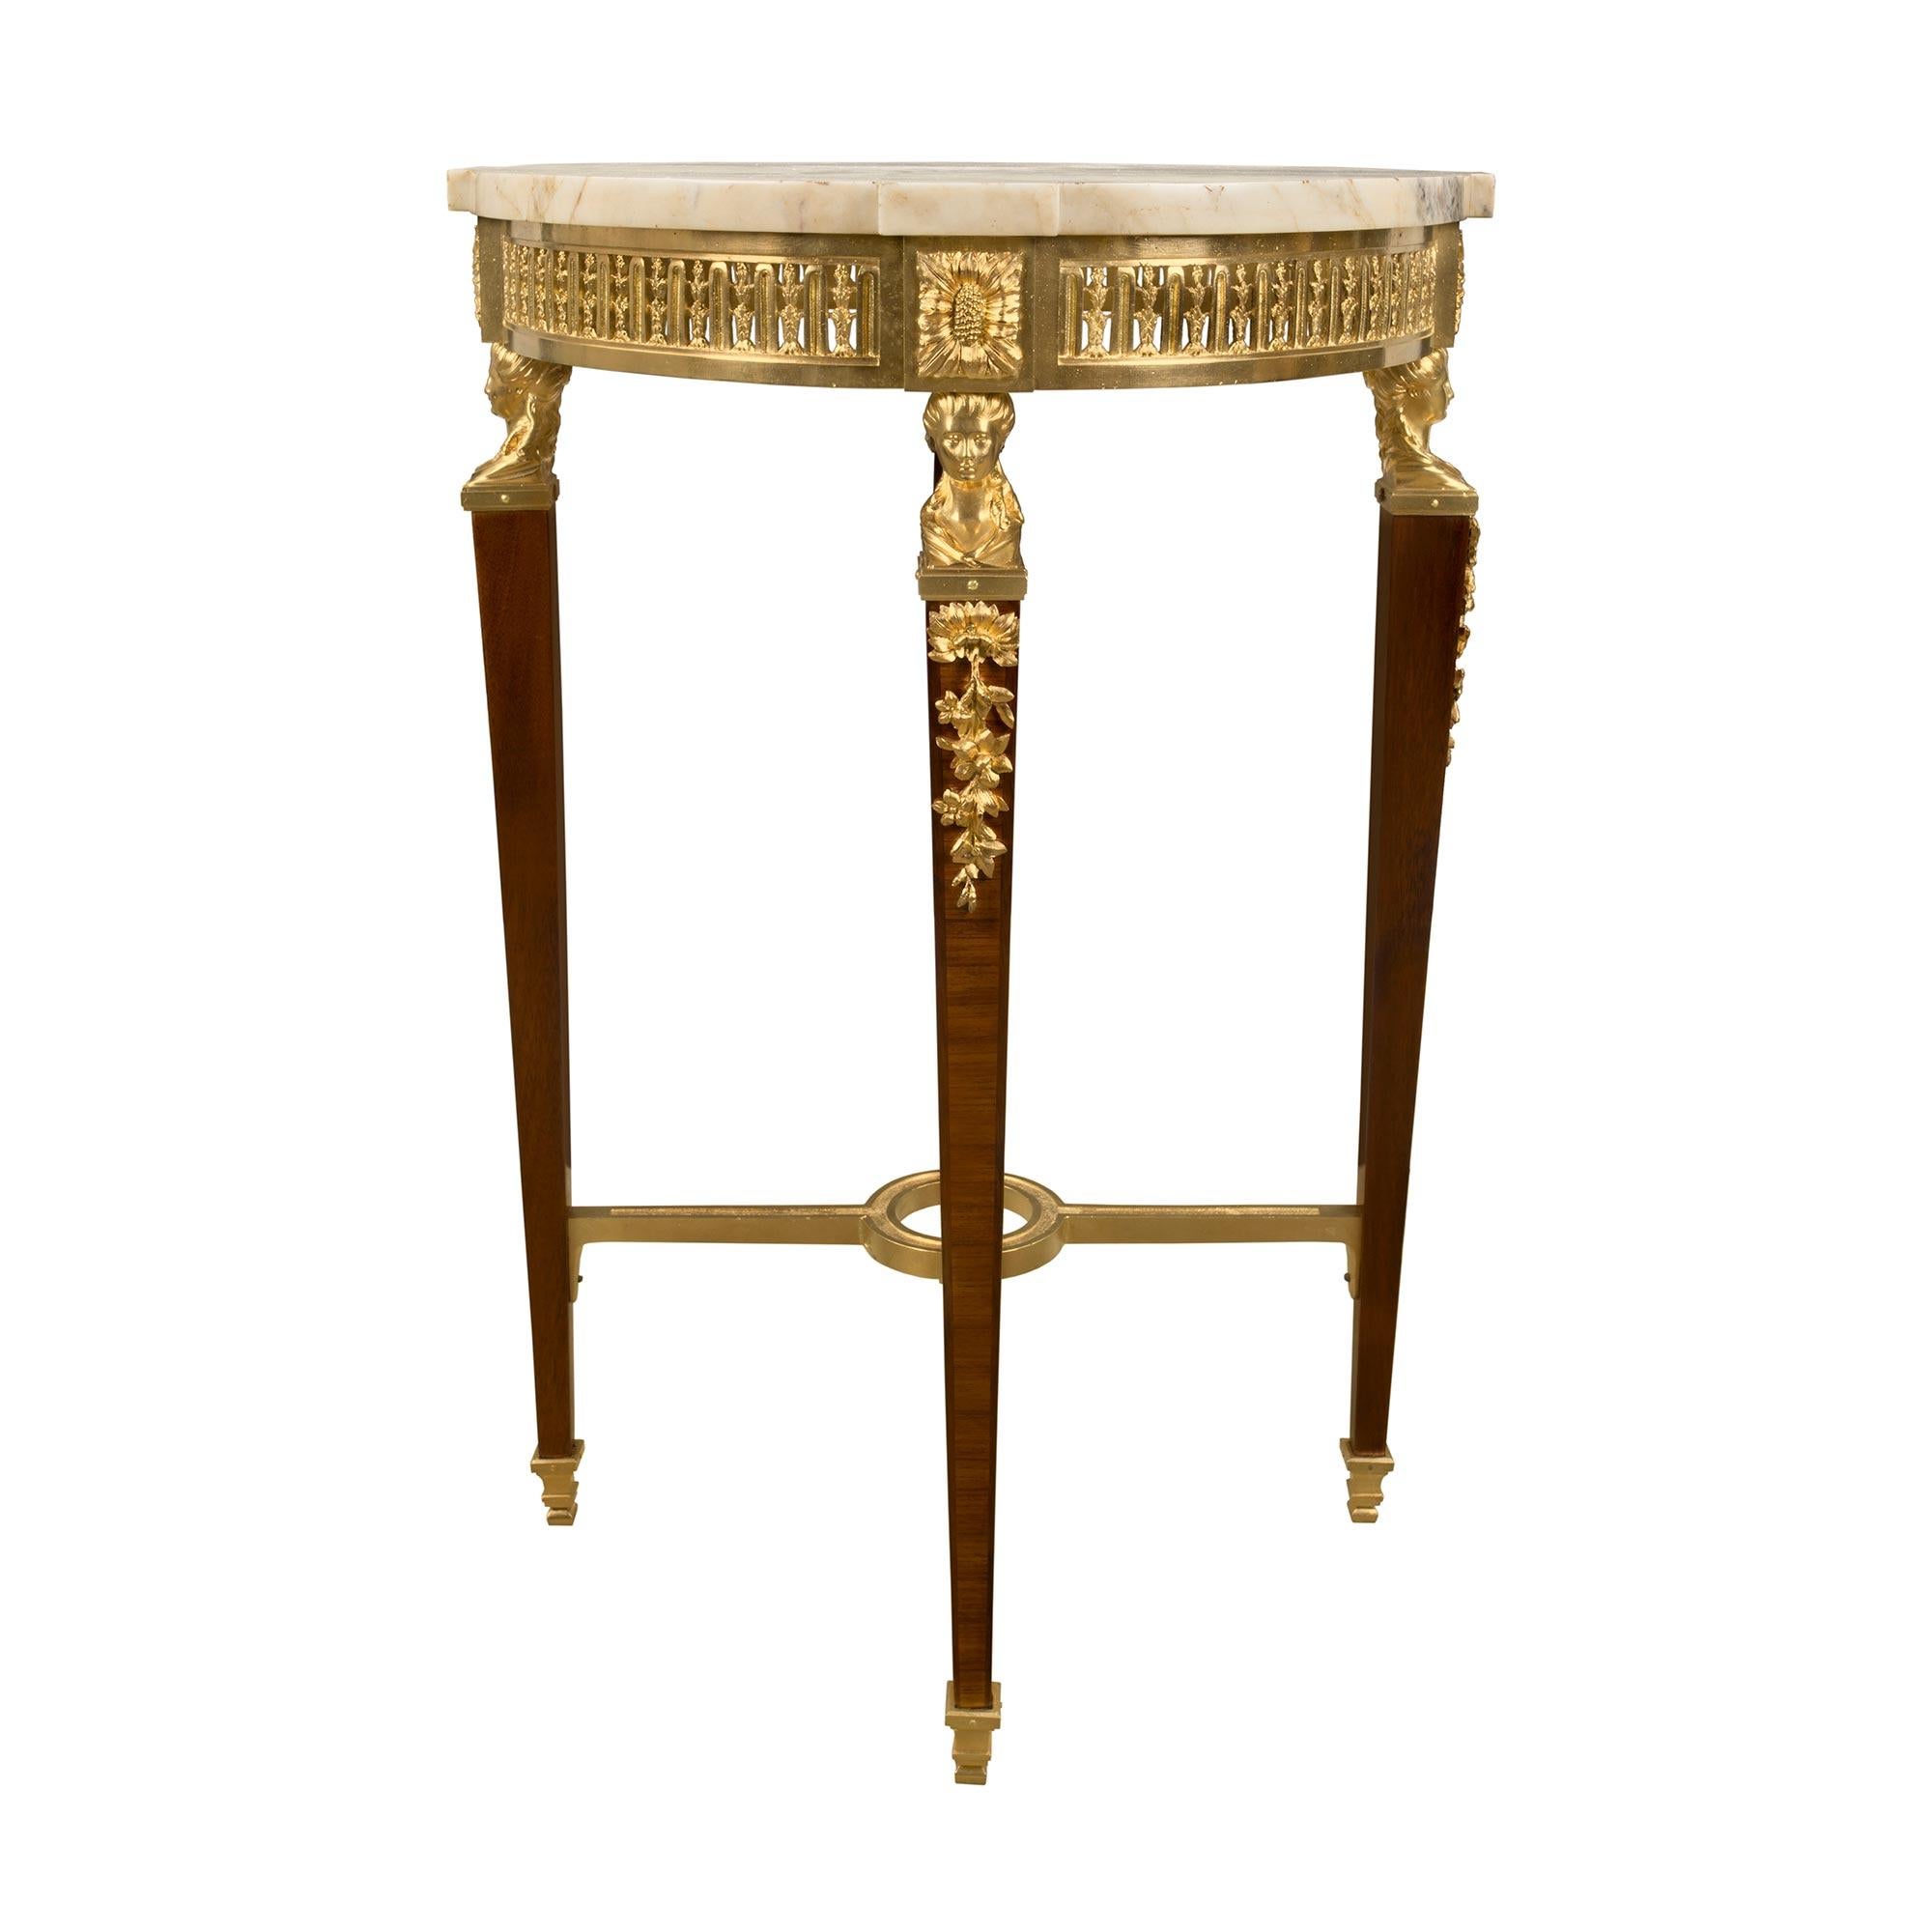 Ein sehr eleganter und einzigartiger französischer Beistelltisch im Stil Louis XVI des 19. Jahrhunderts aus Ormolu und Tulpenholz. Der Tisch wird von quadratischen, konisch zulaufenden Ormolu-Sabots unter den konisch zulaufenden Beinen mit